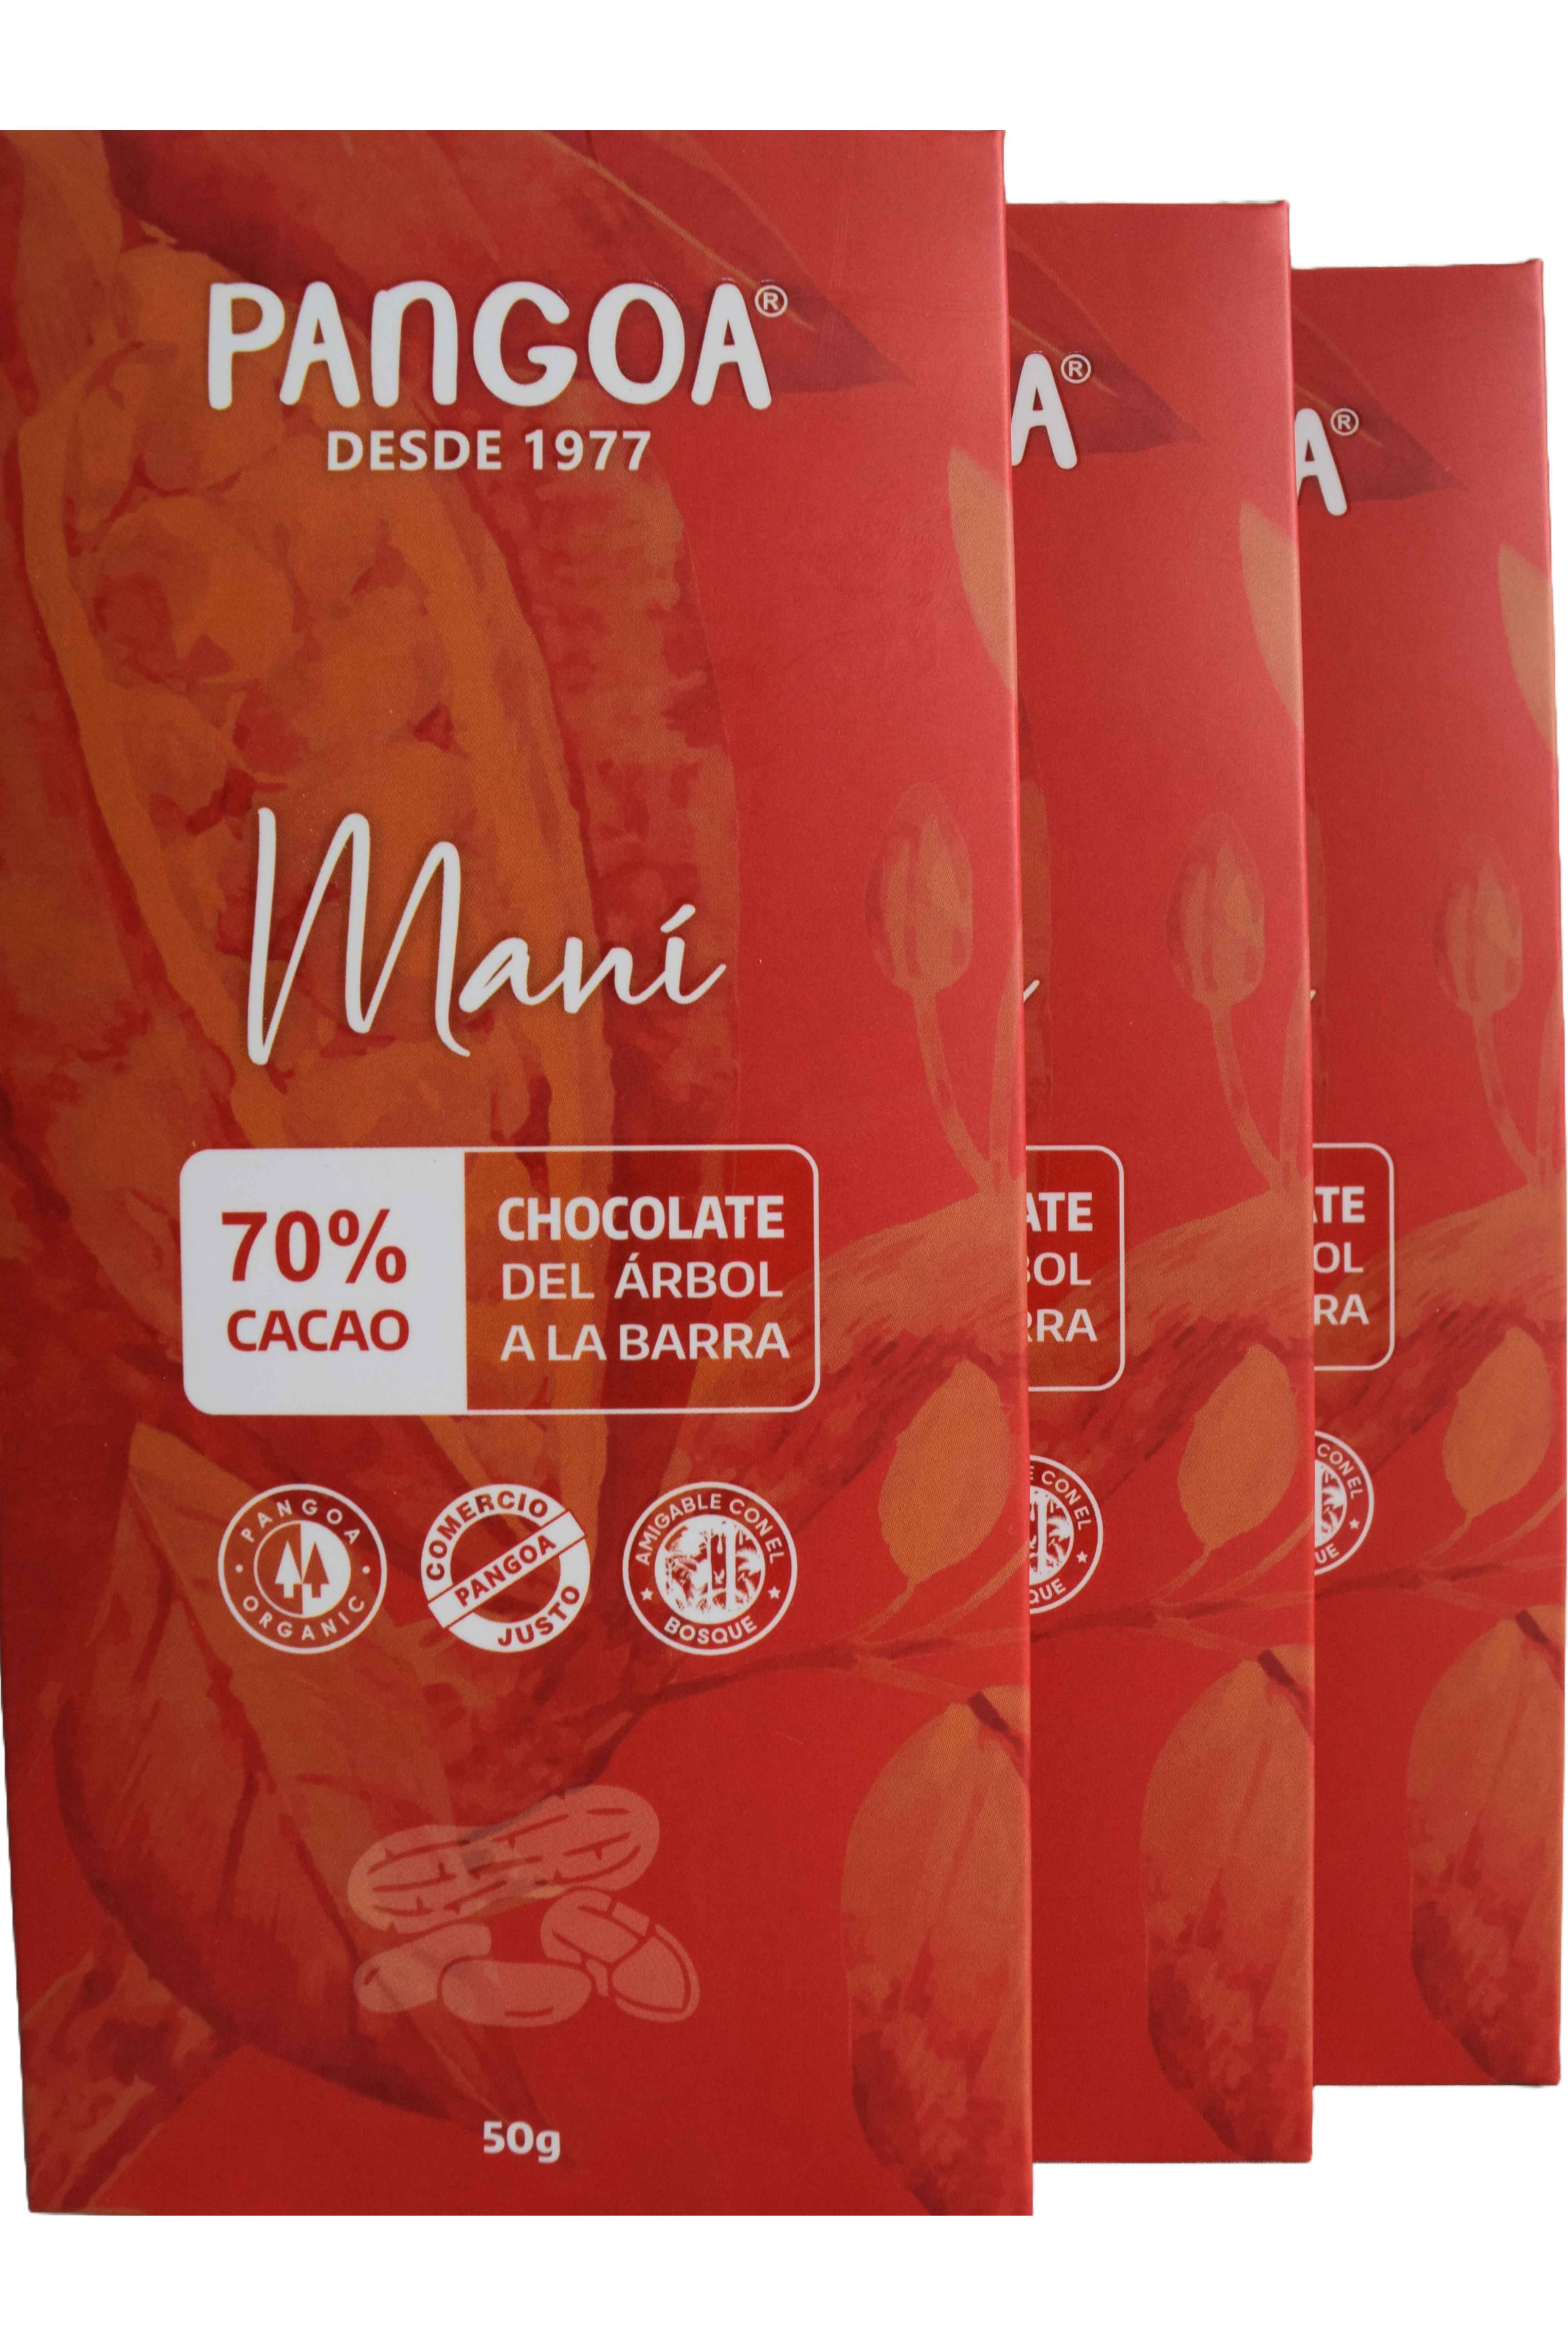 Producto RelacionadoManí Chocolate 70% Cacao